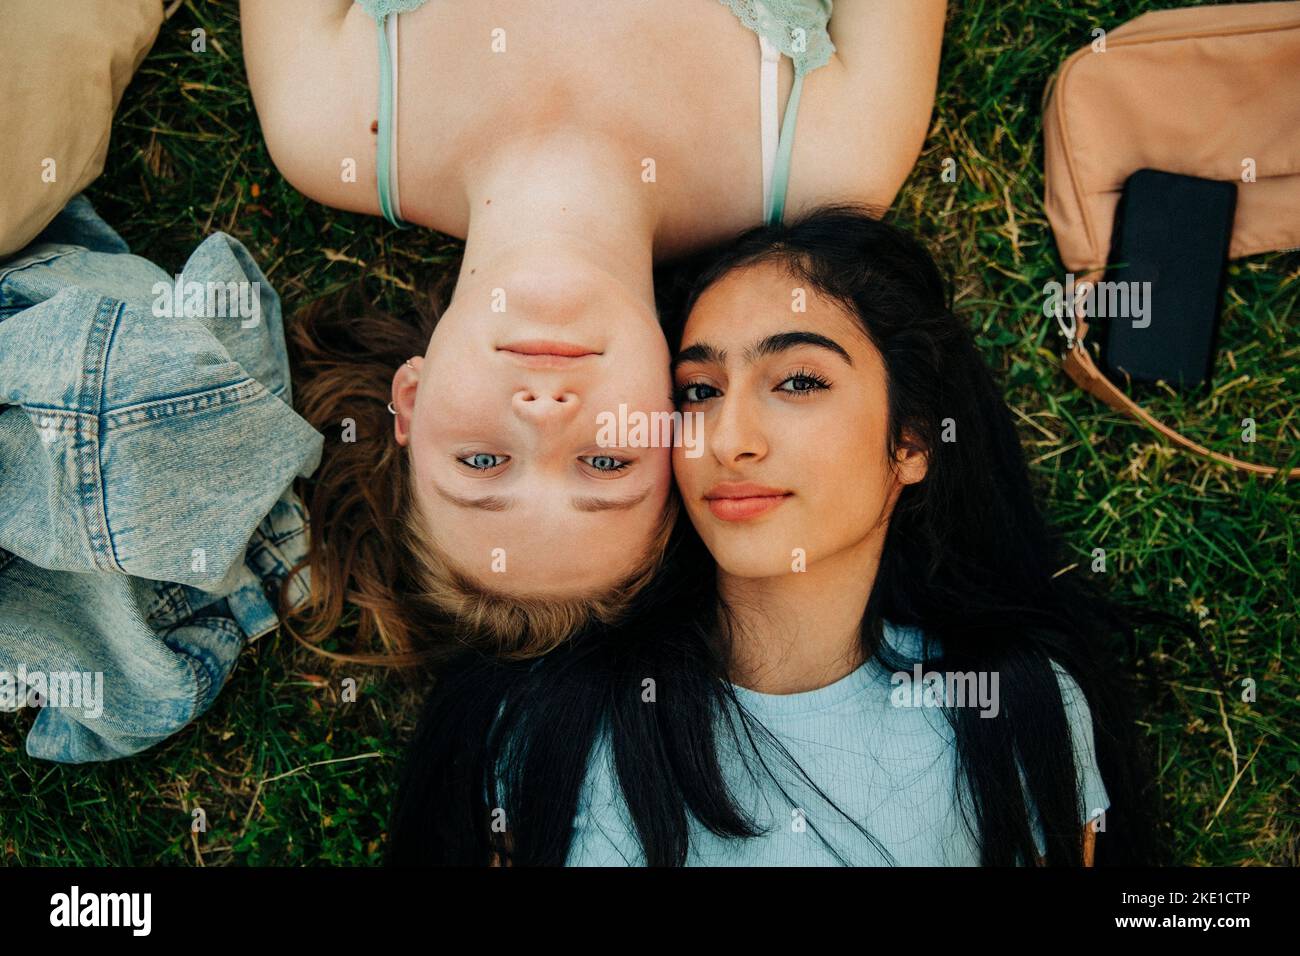 Ritratto delle ragazze adolescenti che giacciono insieme sull'erba nel parco Foto Stock